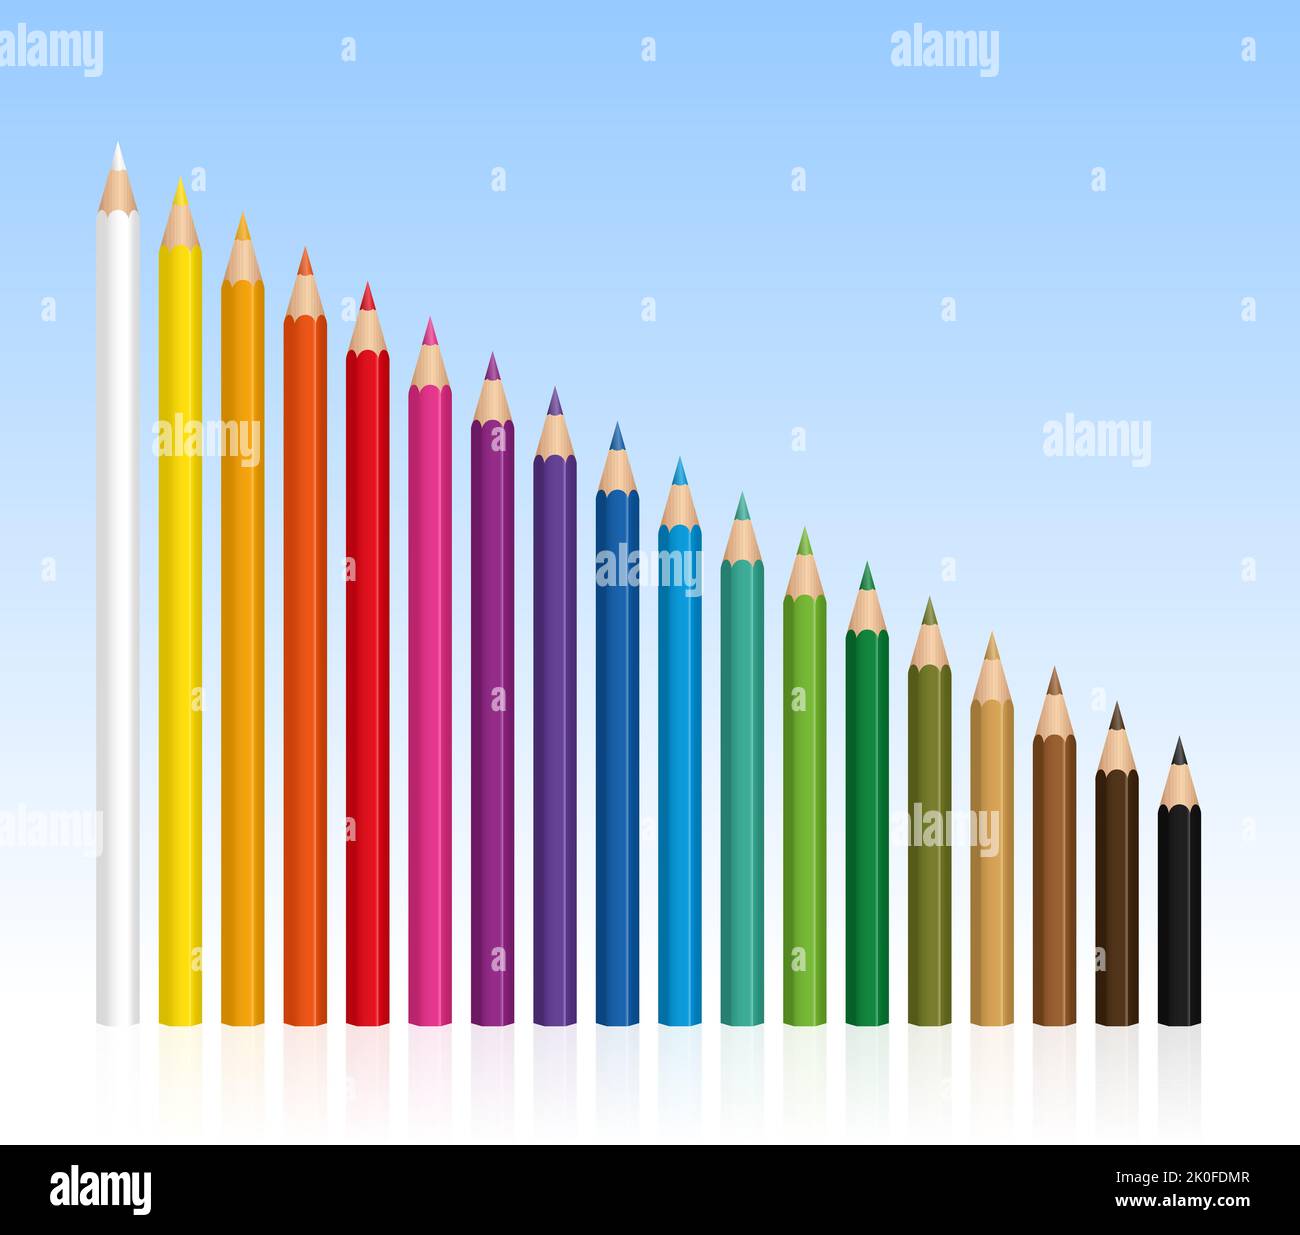 Crayons de couleur, crayons de différentes longueurs, de plus en plus court - illustration fond bleu dégradé. Banque D'Images